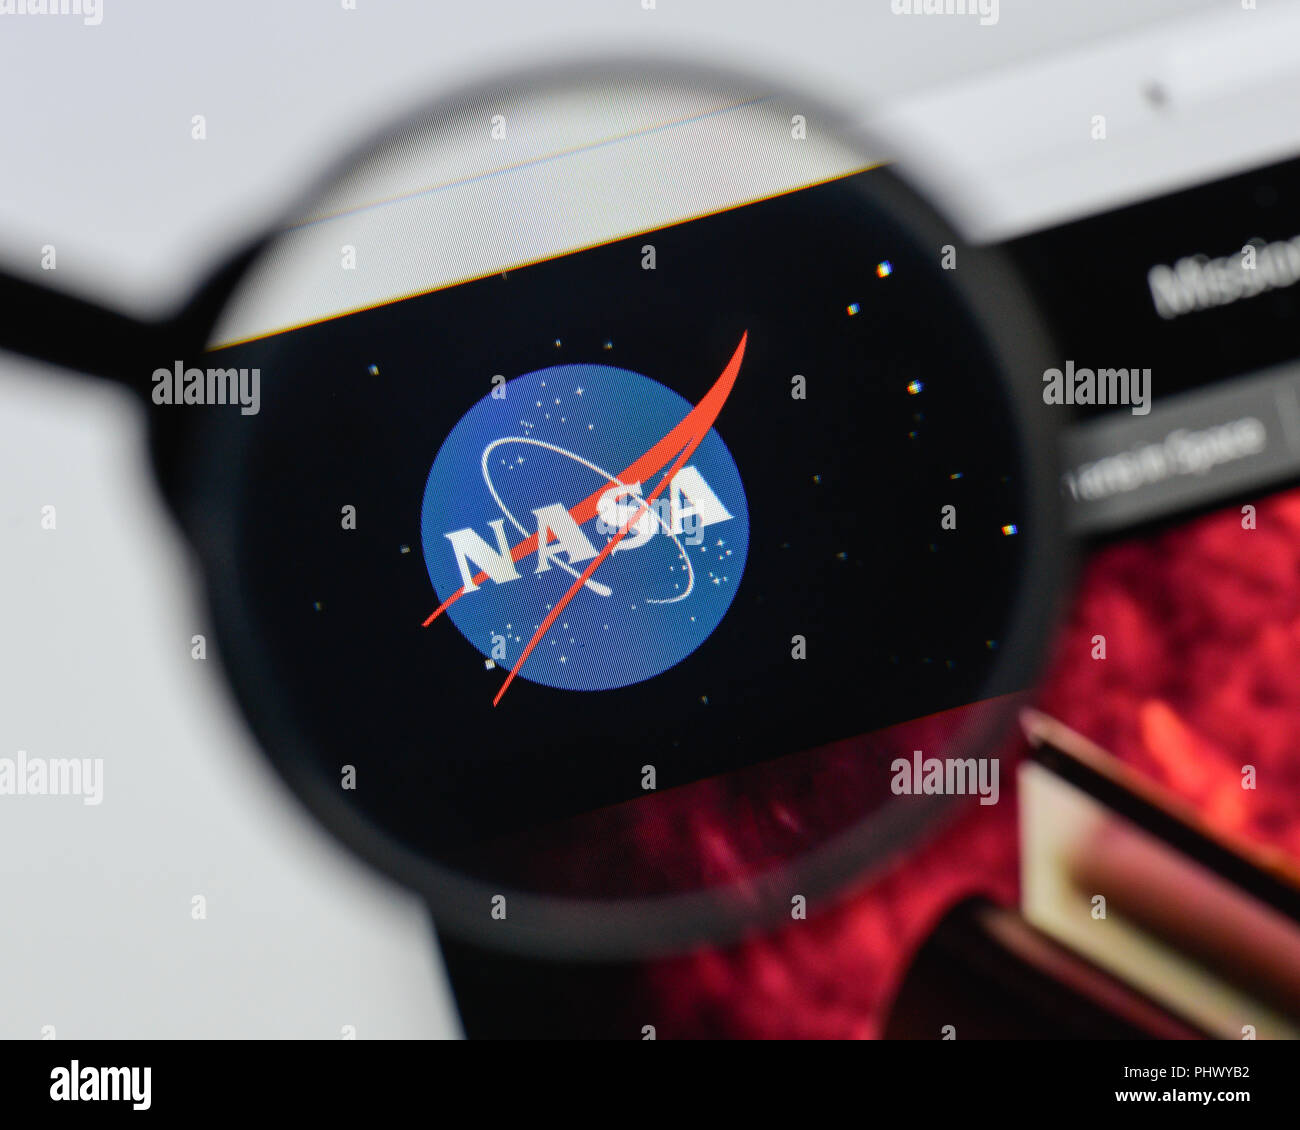 Milan, Italy - August 20, 2018: NASA website homepage. NASA logo visible. Stock Photo